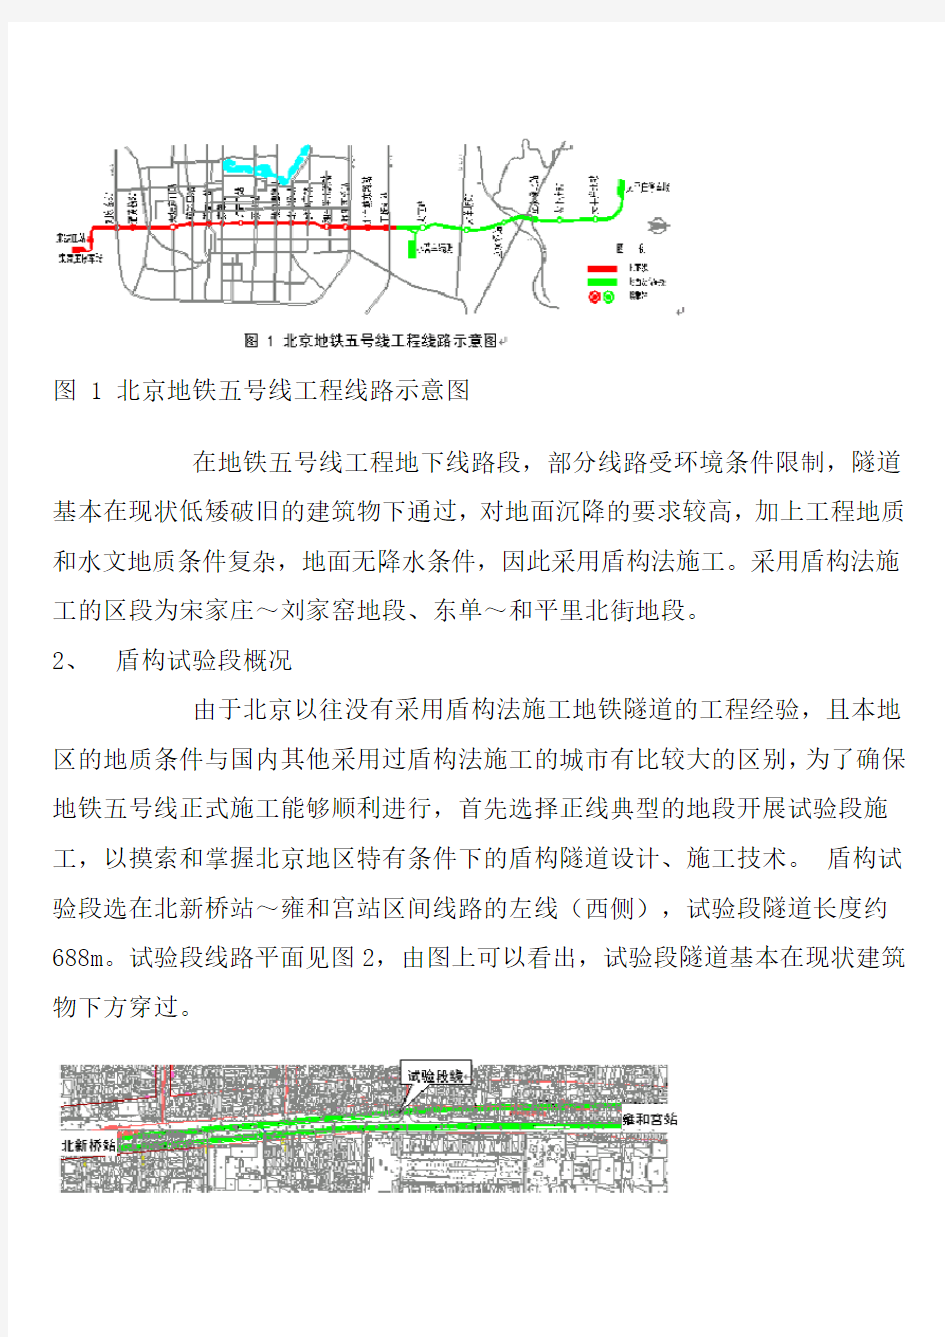 北京地铁5号线盾构隧道设计施工要点